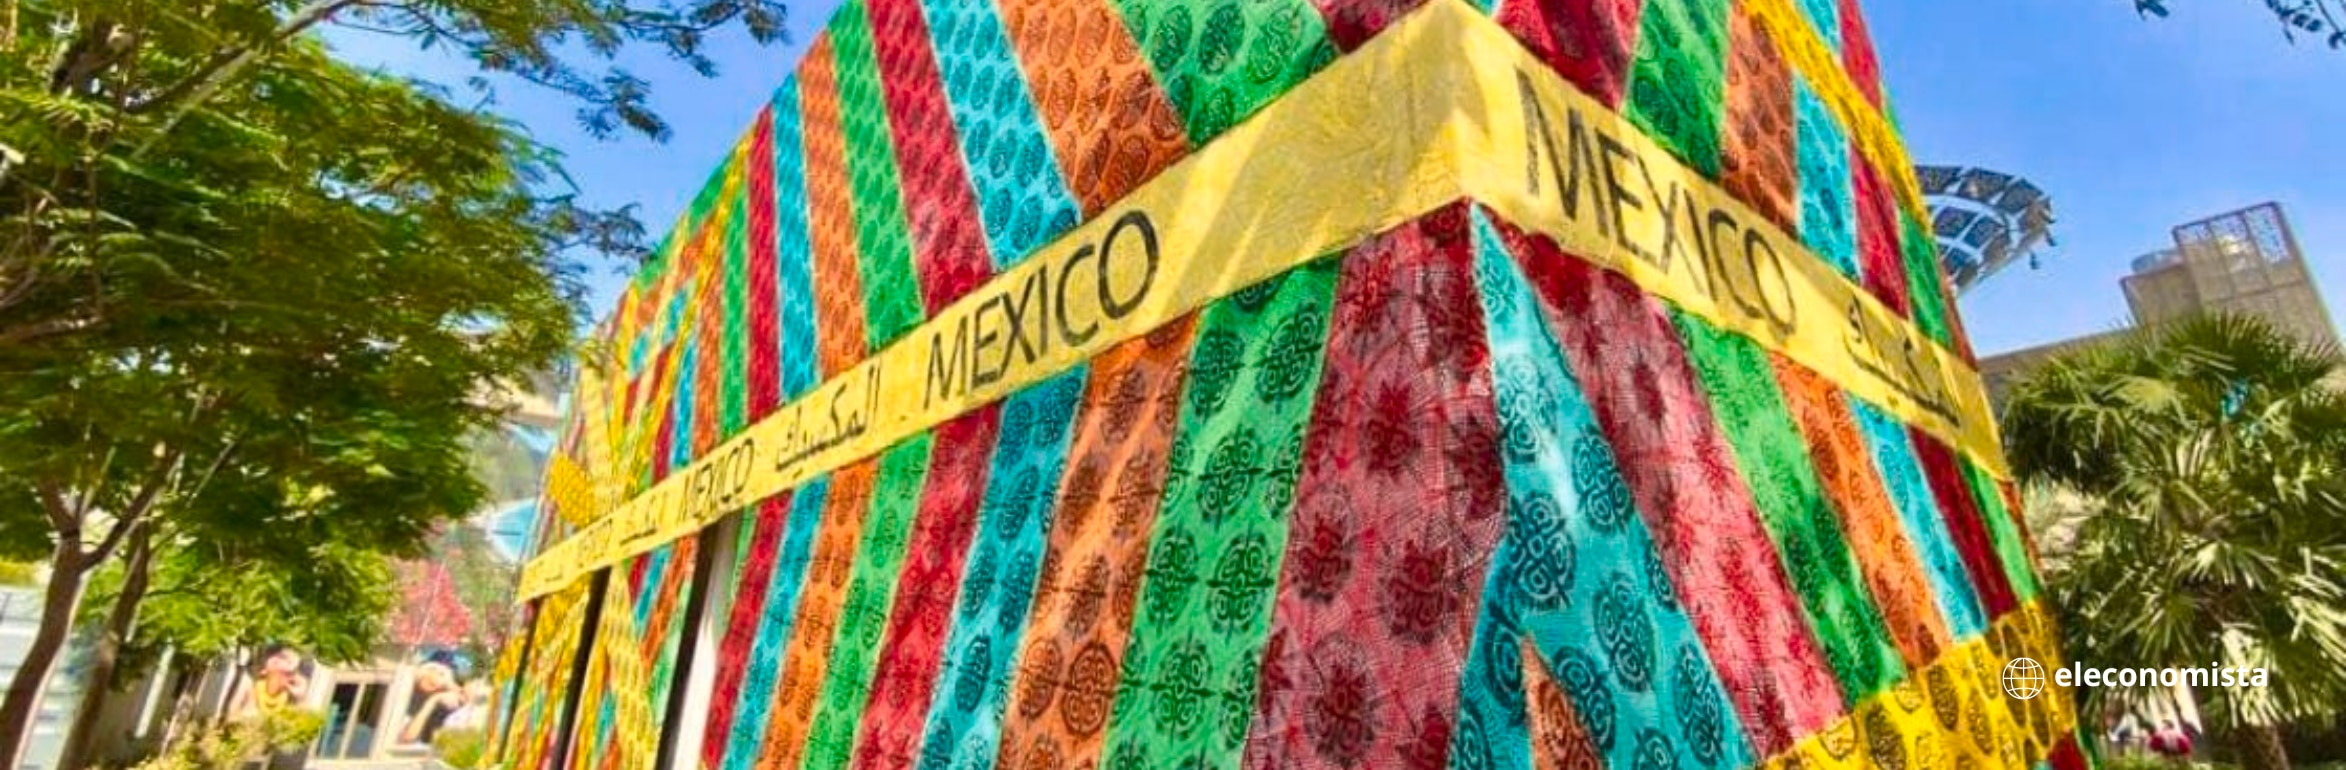 Mexico expo dubai 2020